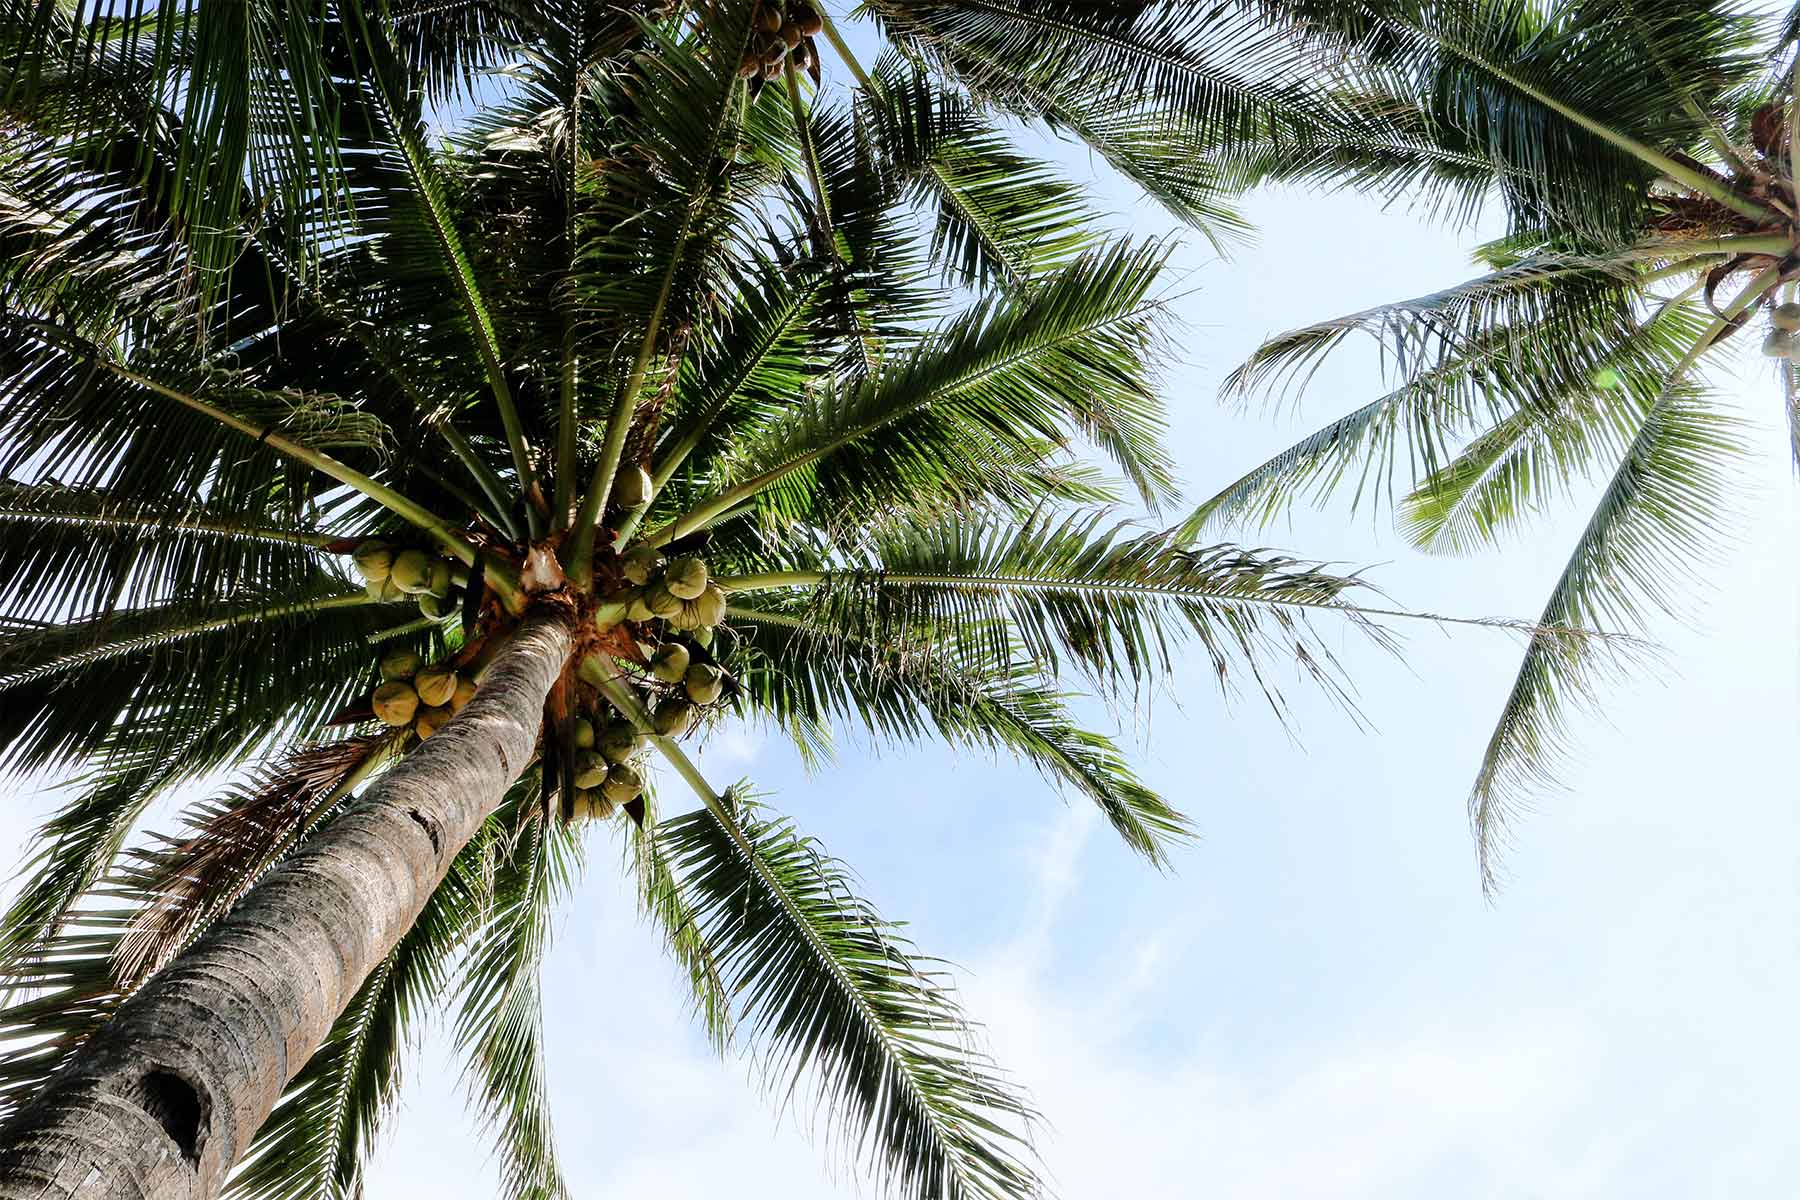 Kokospalmen benötigen ein warmes Klima und einen nährstoffreichen Boden. Sie finden sich im gesamten Tropengürtel und werden bereits seit 3.000 Jahren angebaut. Die Kokosraspeln im Sortiment von August Töpfer & Co. stammen aus Indonesien, Sri Lanka, Vietnam und den Philippinen. (Bild: © Zeshalyn Capindo/unsplash.com)